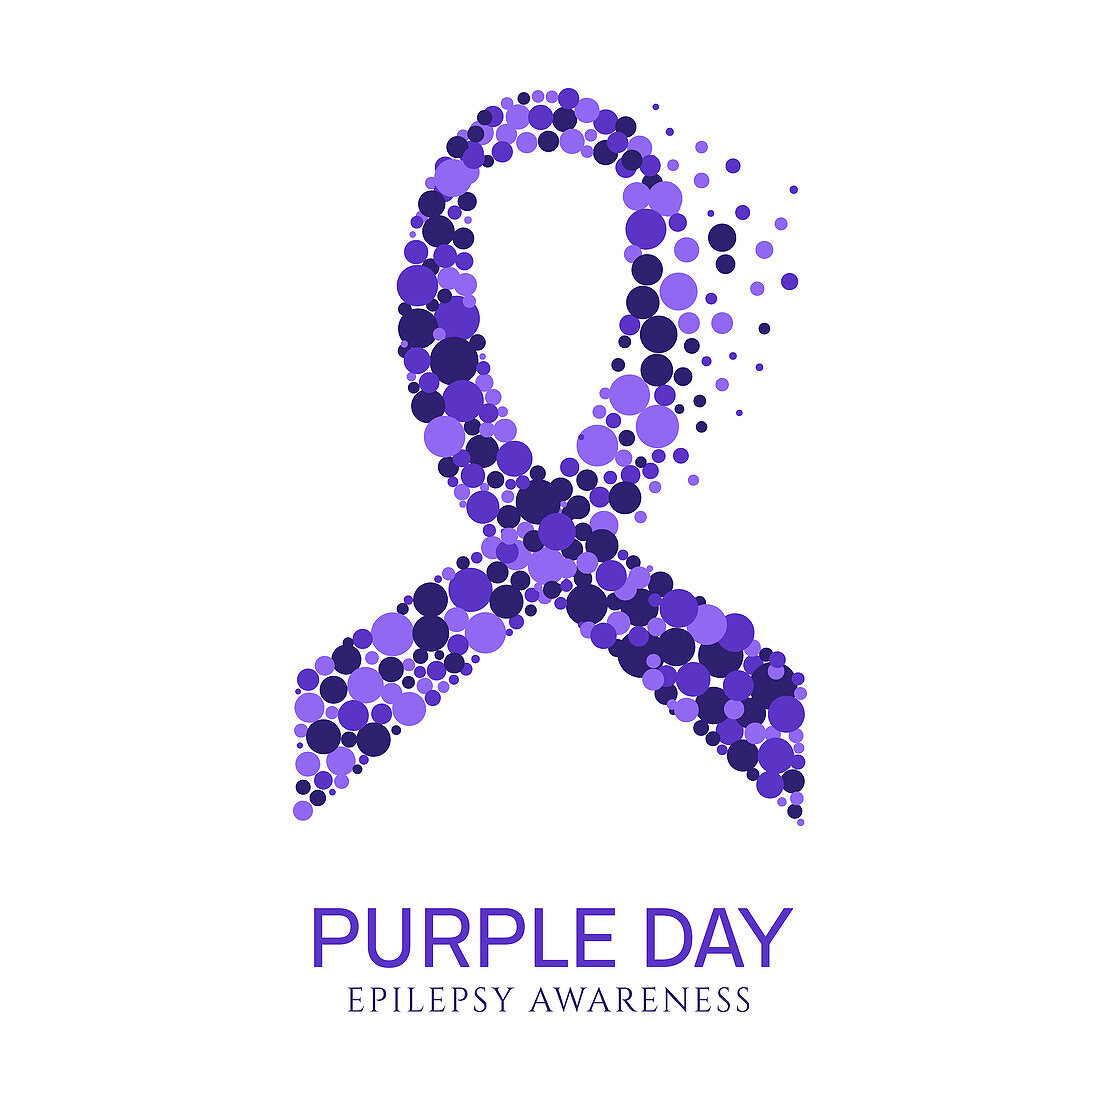 Epilepsy awareness ribbon, illustration